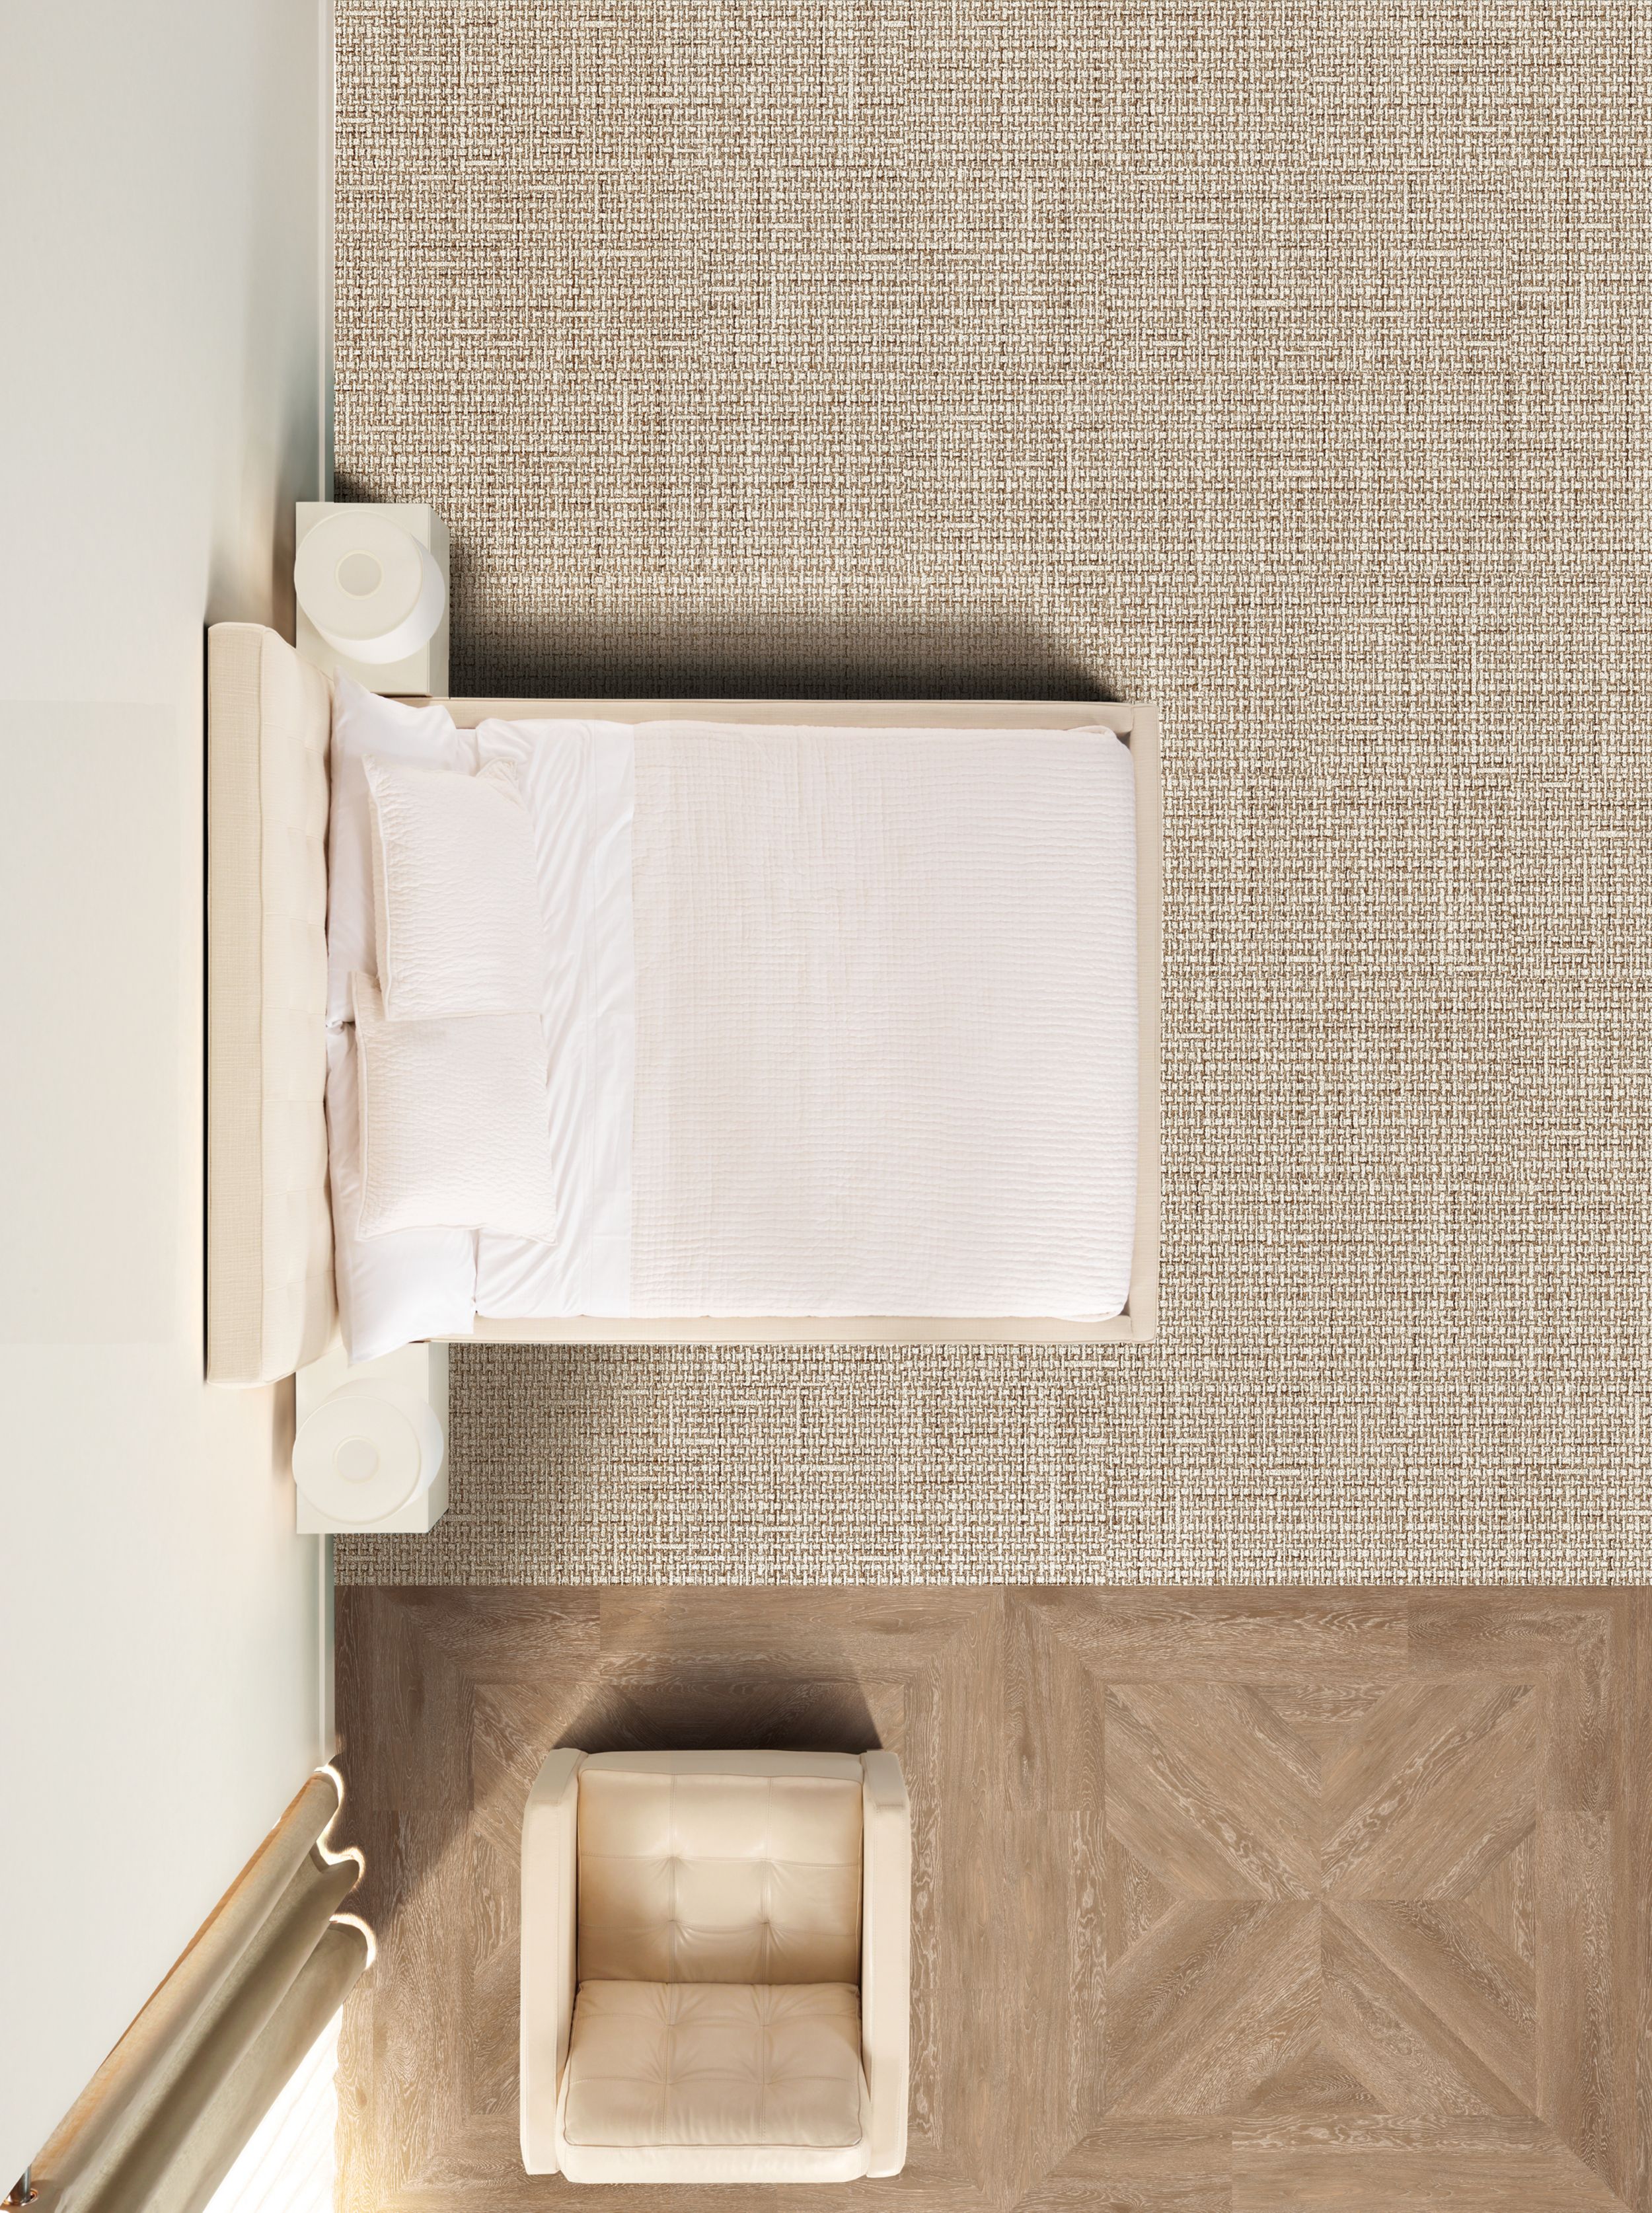 Interface RMS 607 carpet tile Textured Woodgrains LVT in hotel guest room número de imagen 4